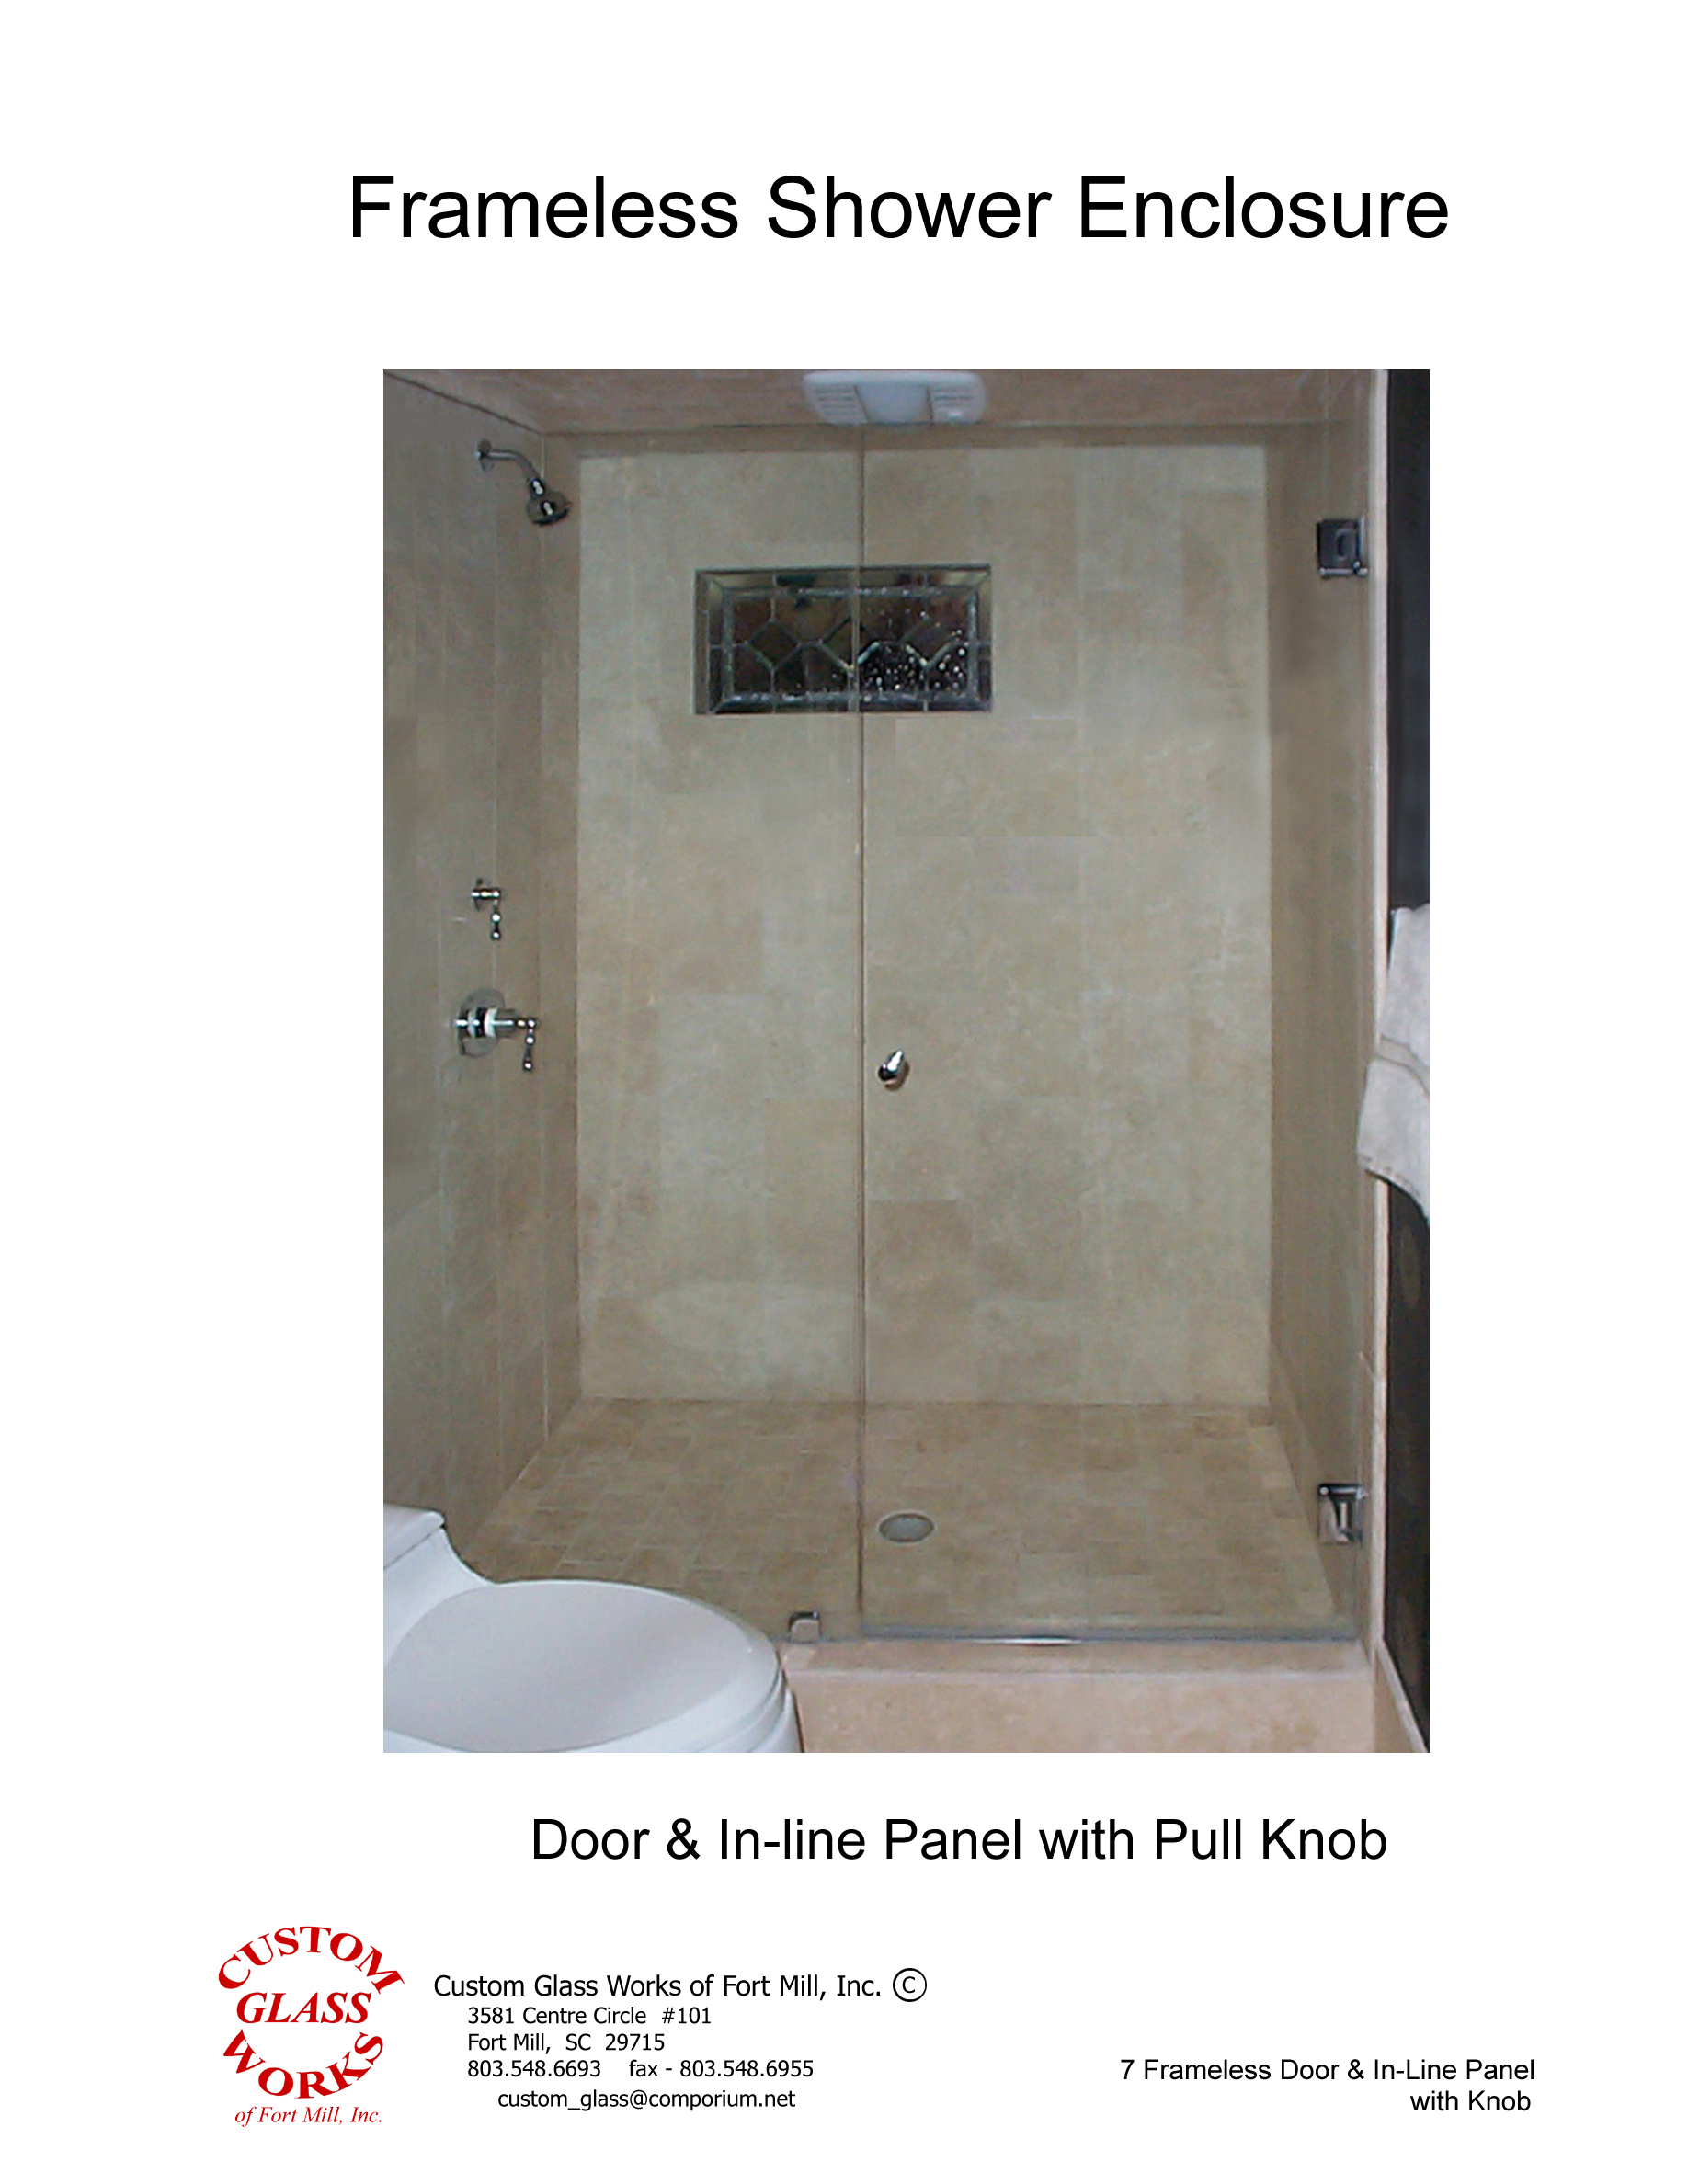 7 Frameless Door & In-Line Panel with Knob